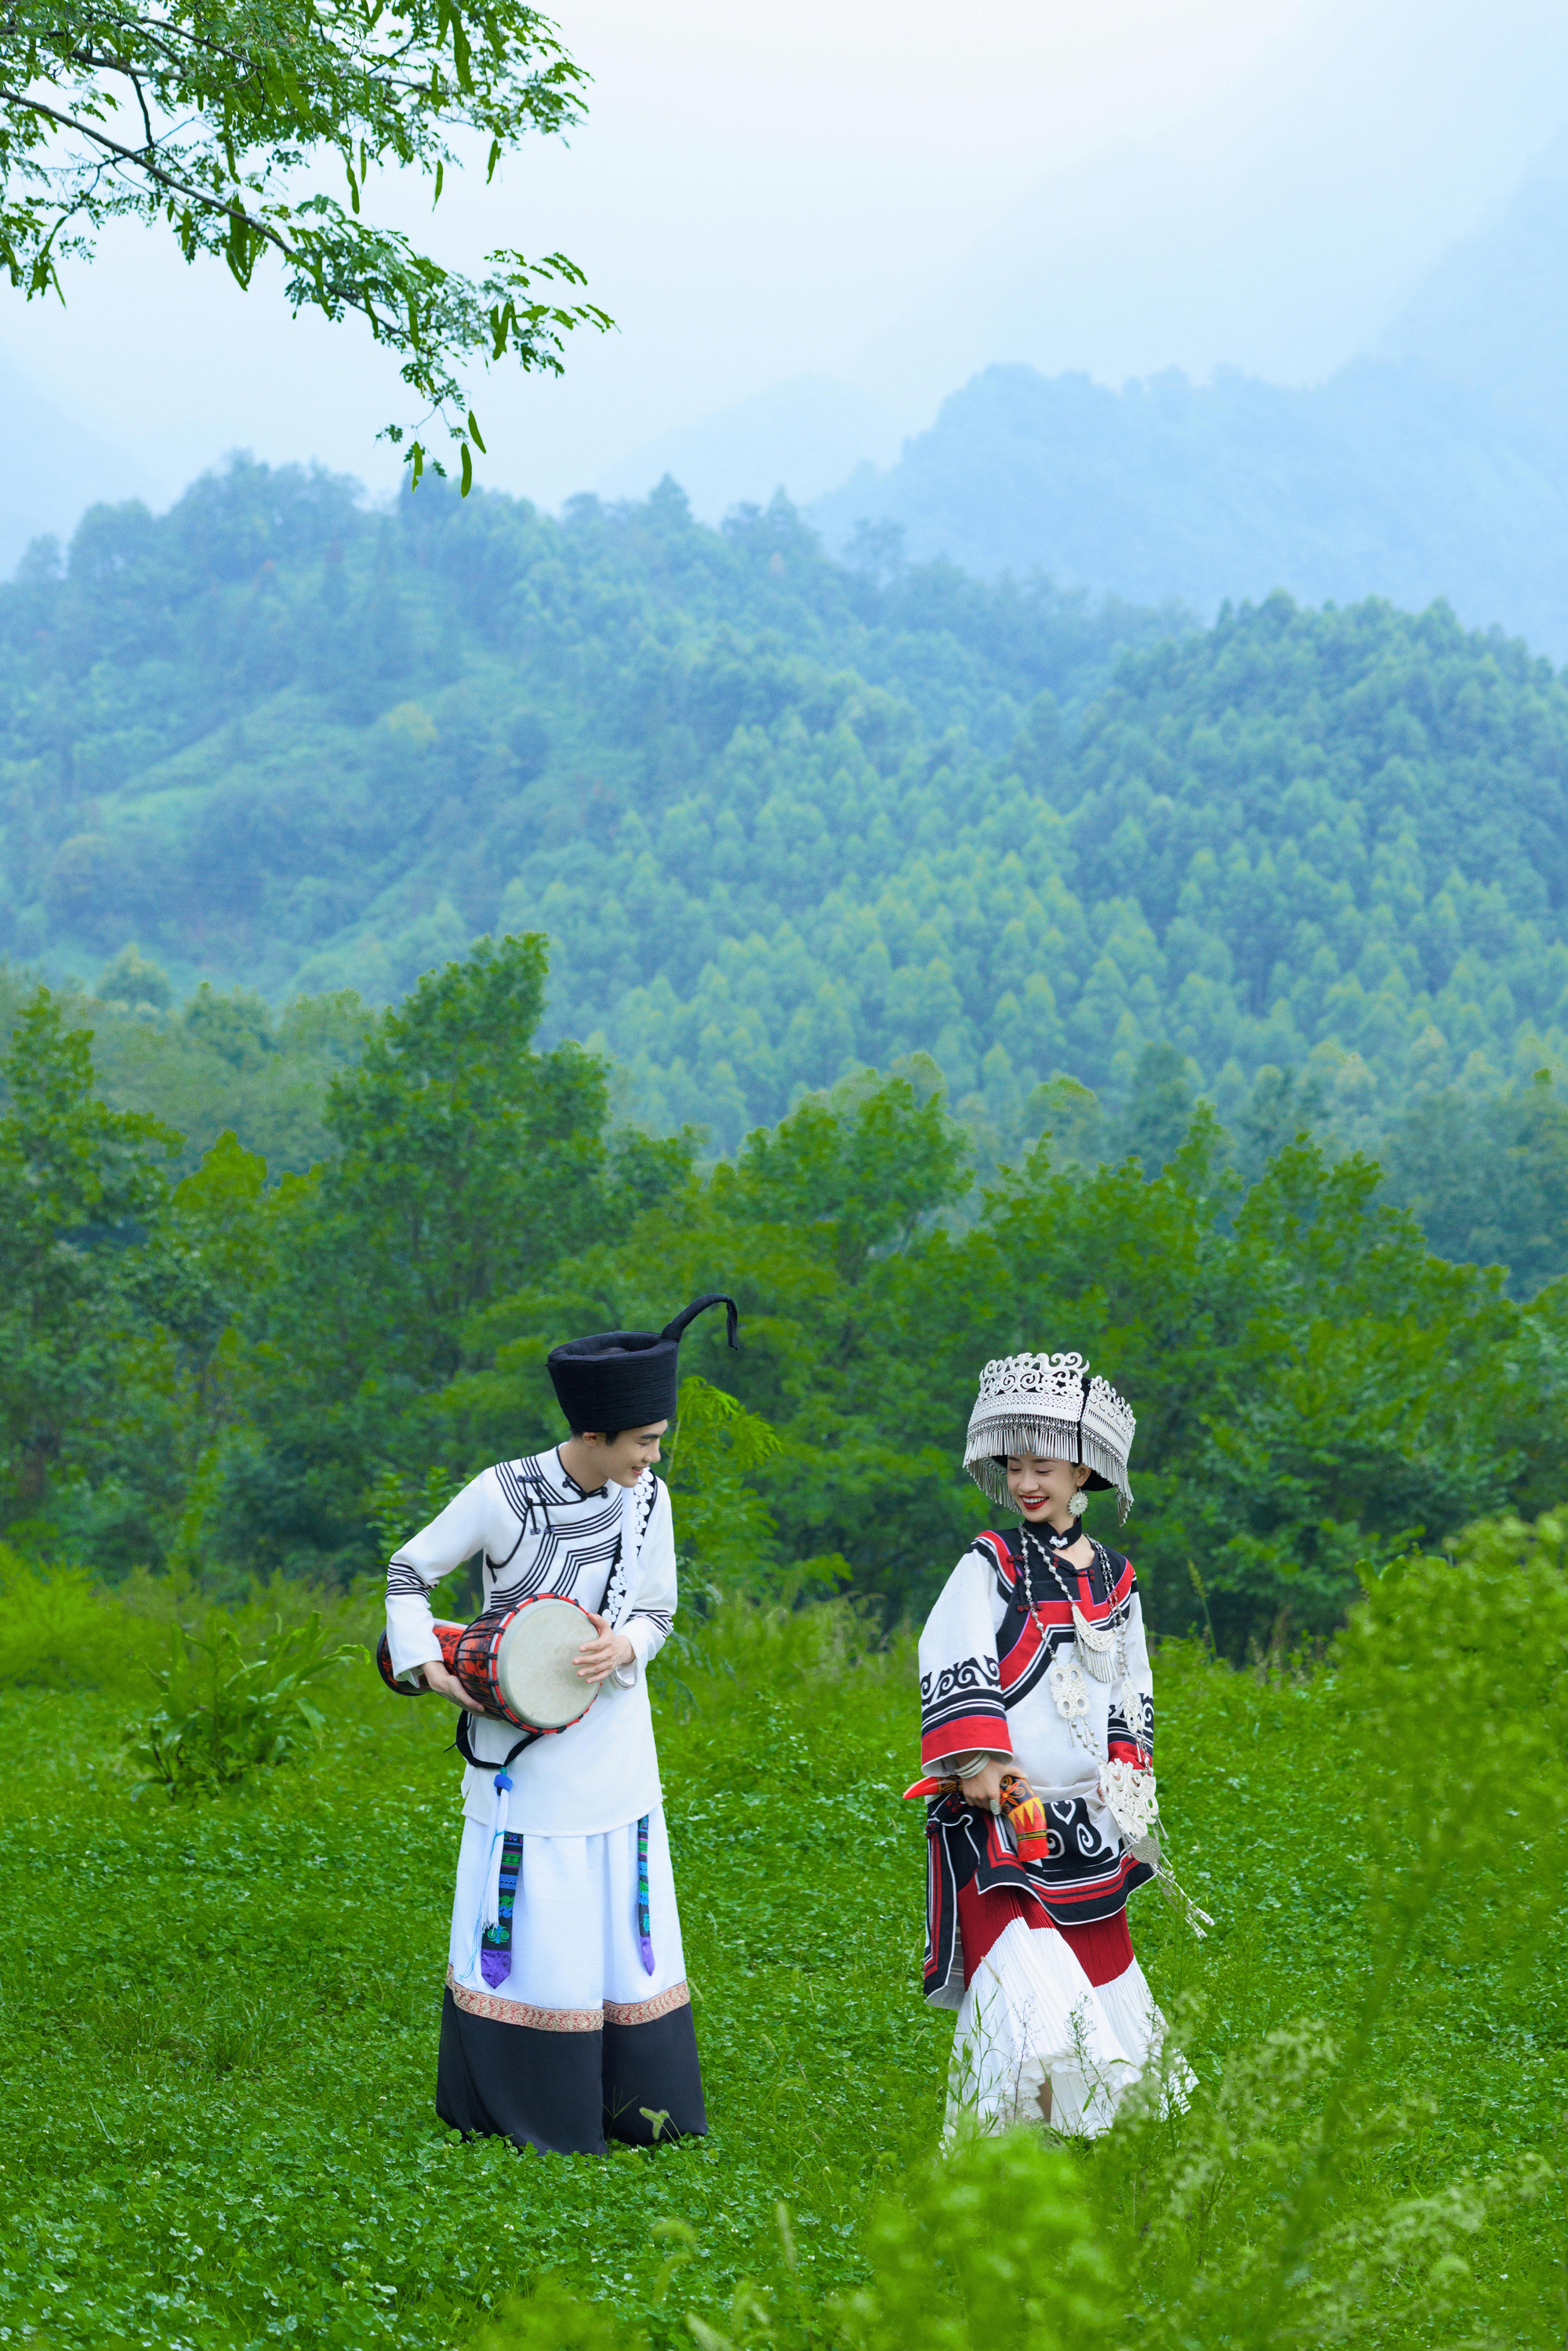 民族风·地域文化·彝族婚纱照+特色主题拍摄